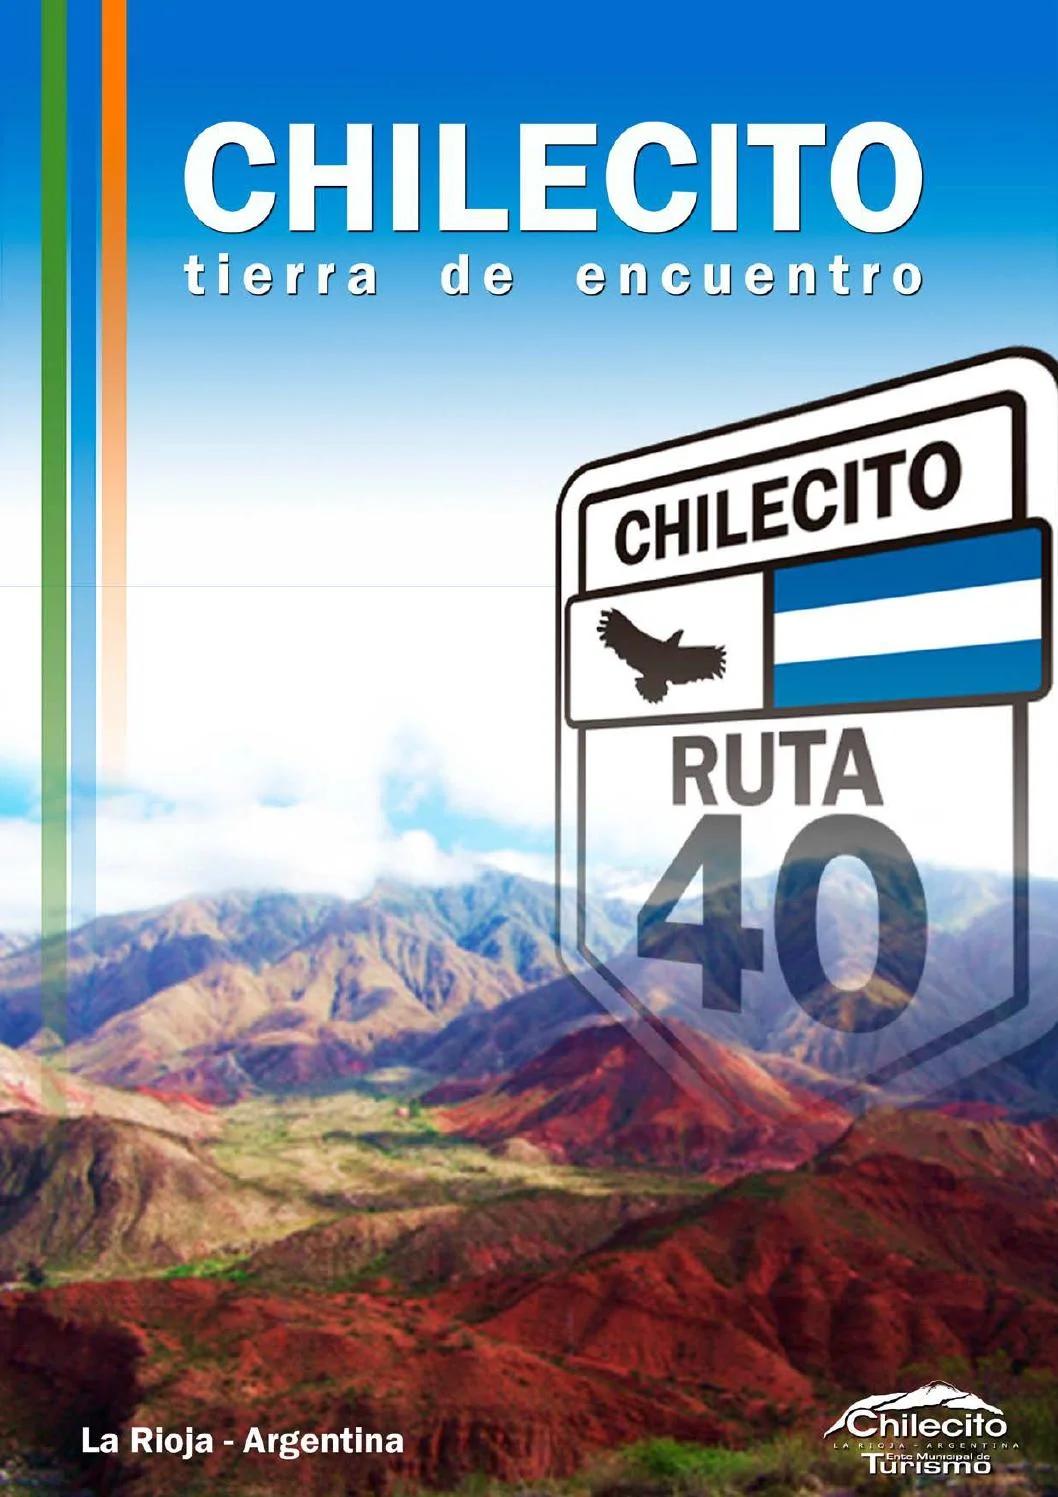 cuanto cuesta un flete desde chilecito a anillaco - Cómo viajo de La Rioja a Chilecito